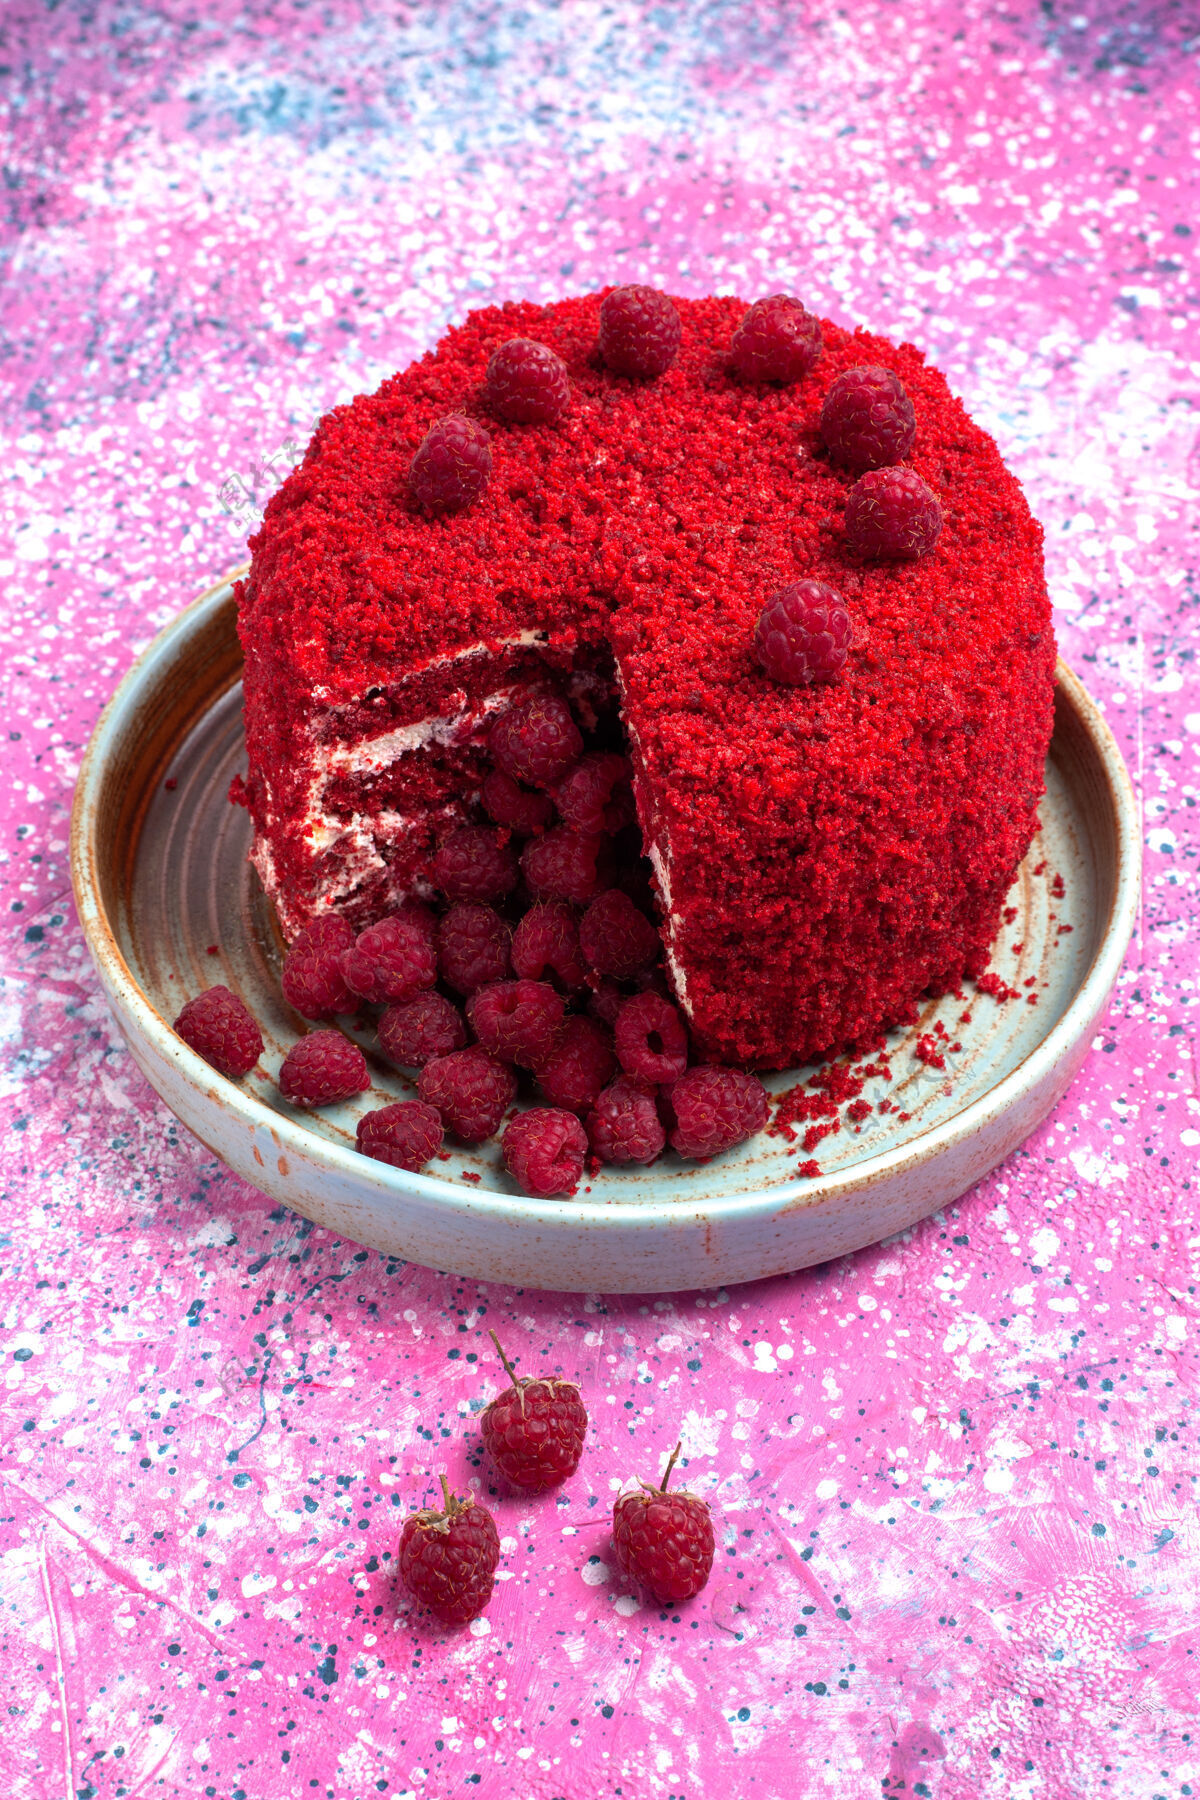 糖正面图红色覆盆子蛋糕烤美味内盘上粉红色的办公桌前面食物烘焙